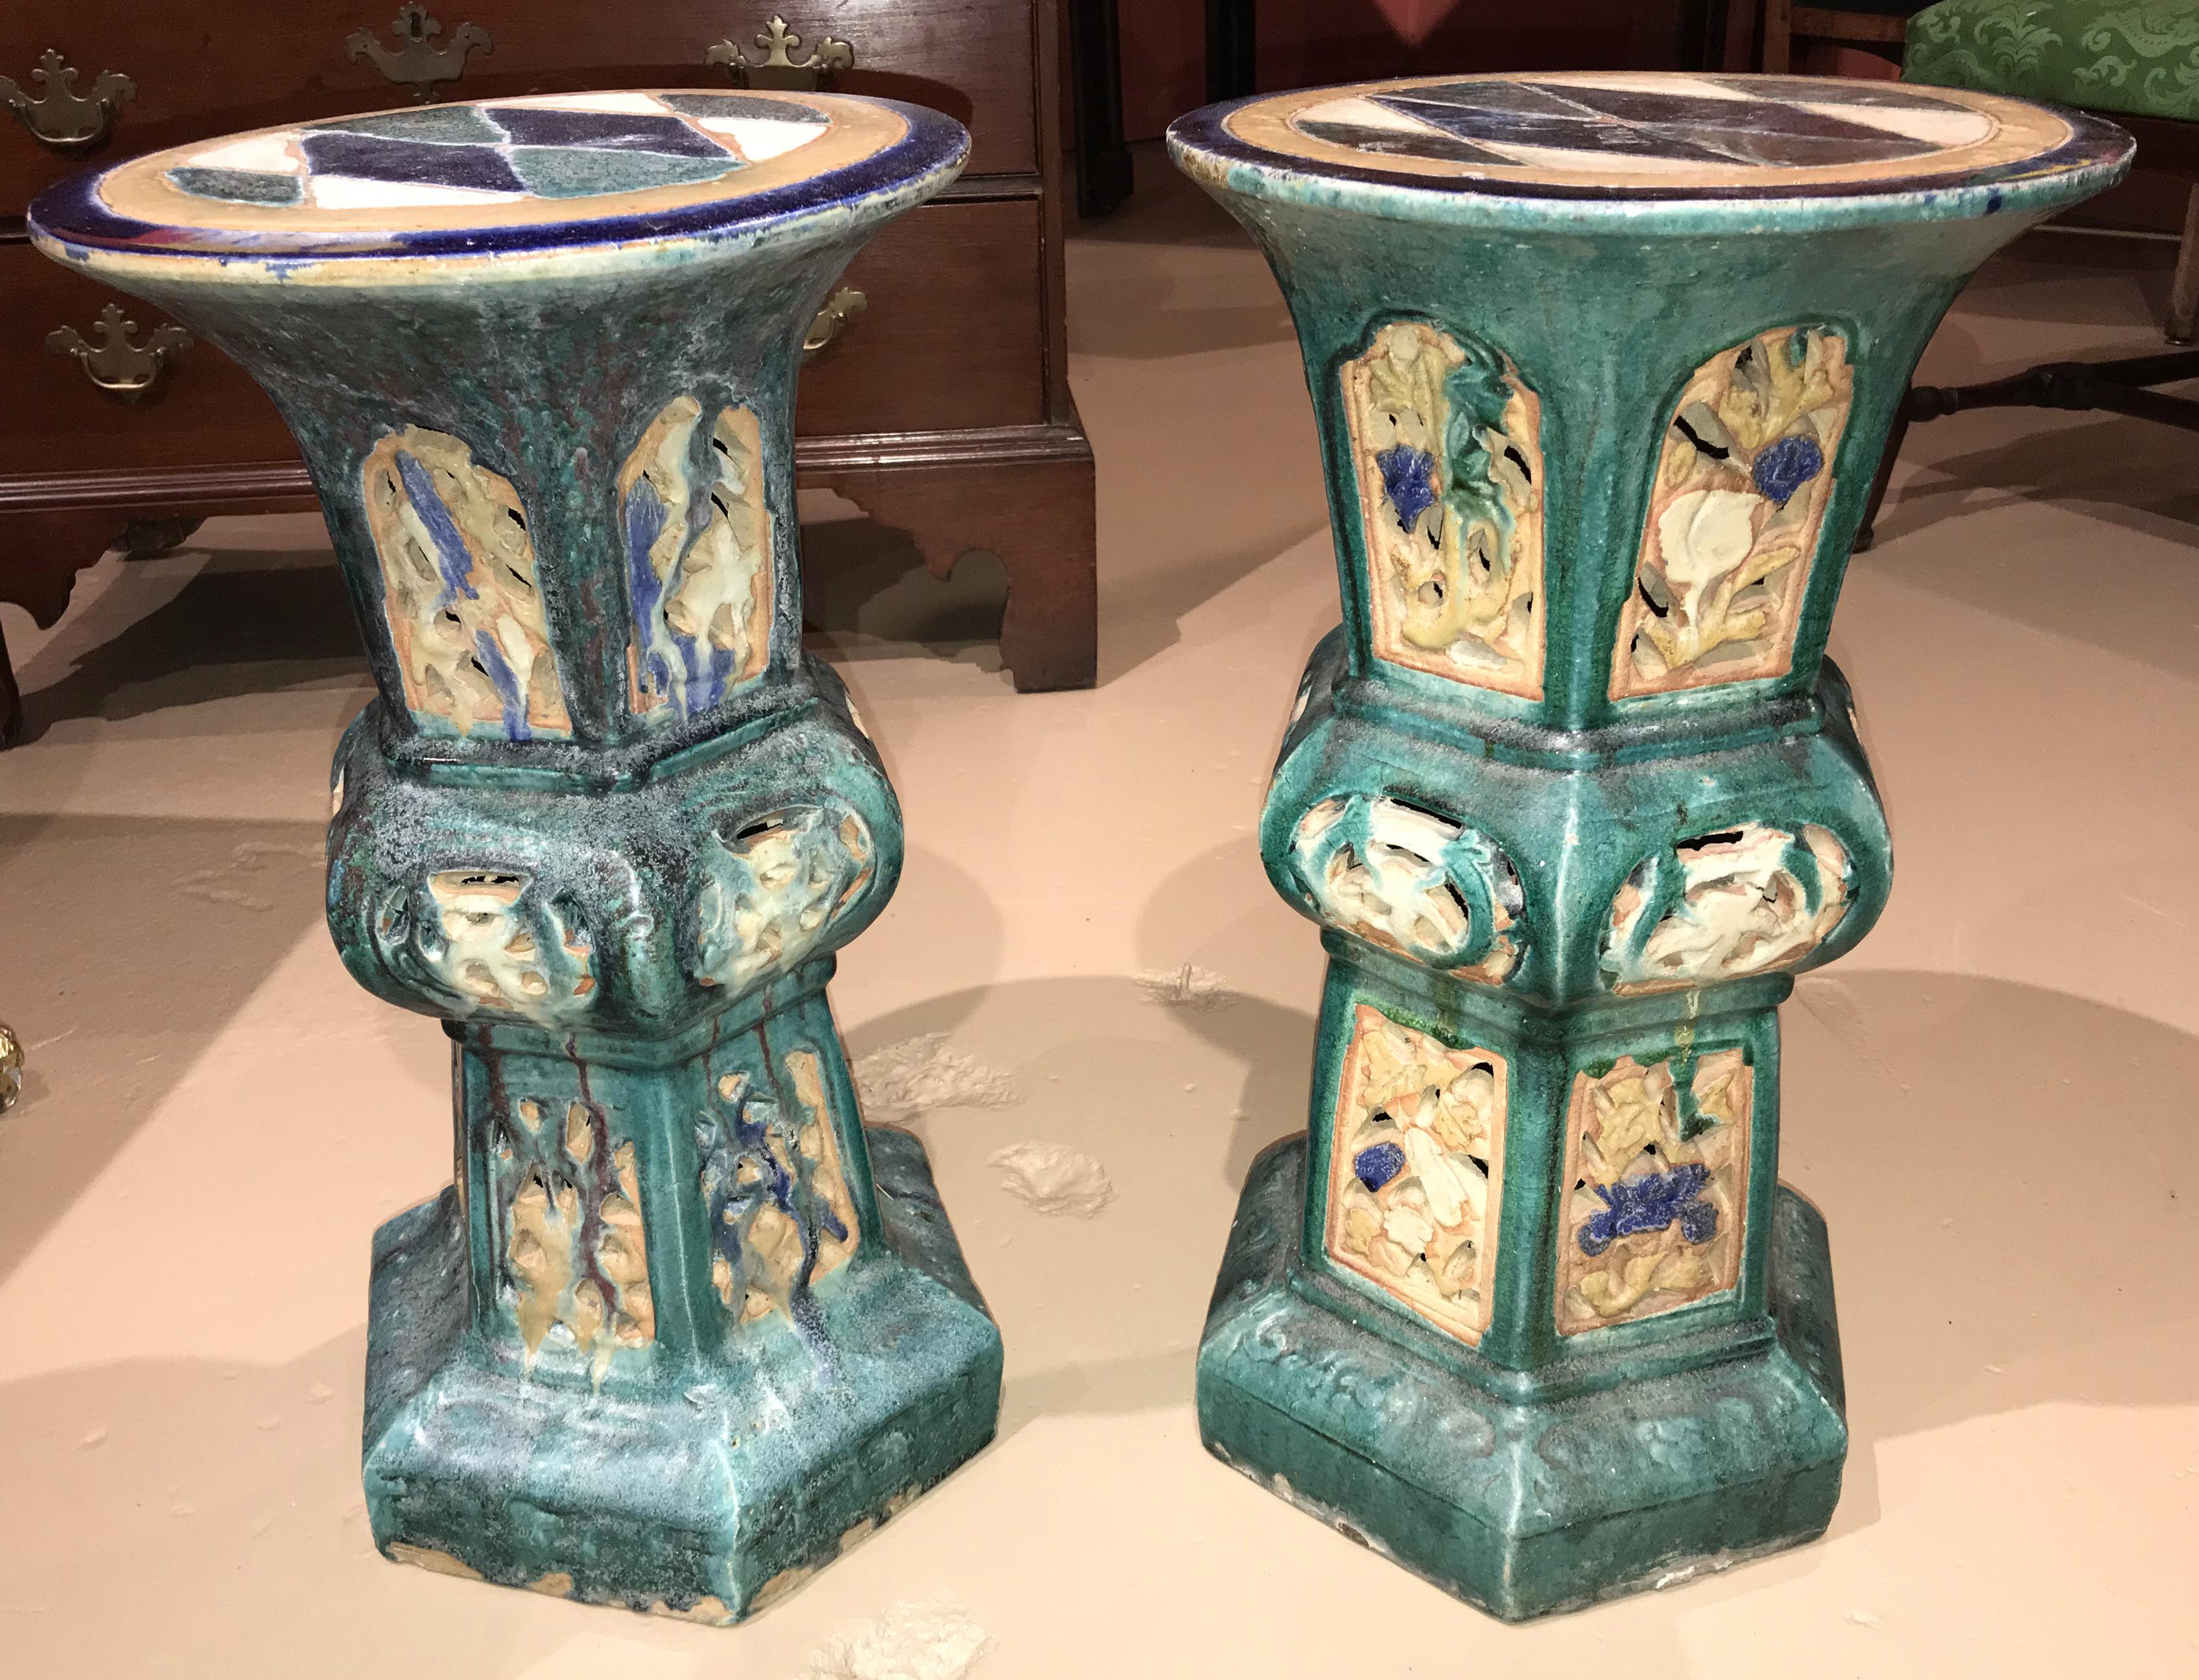 china ceramics display stand